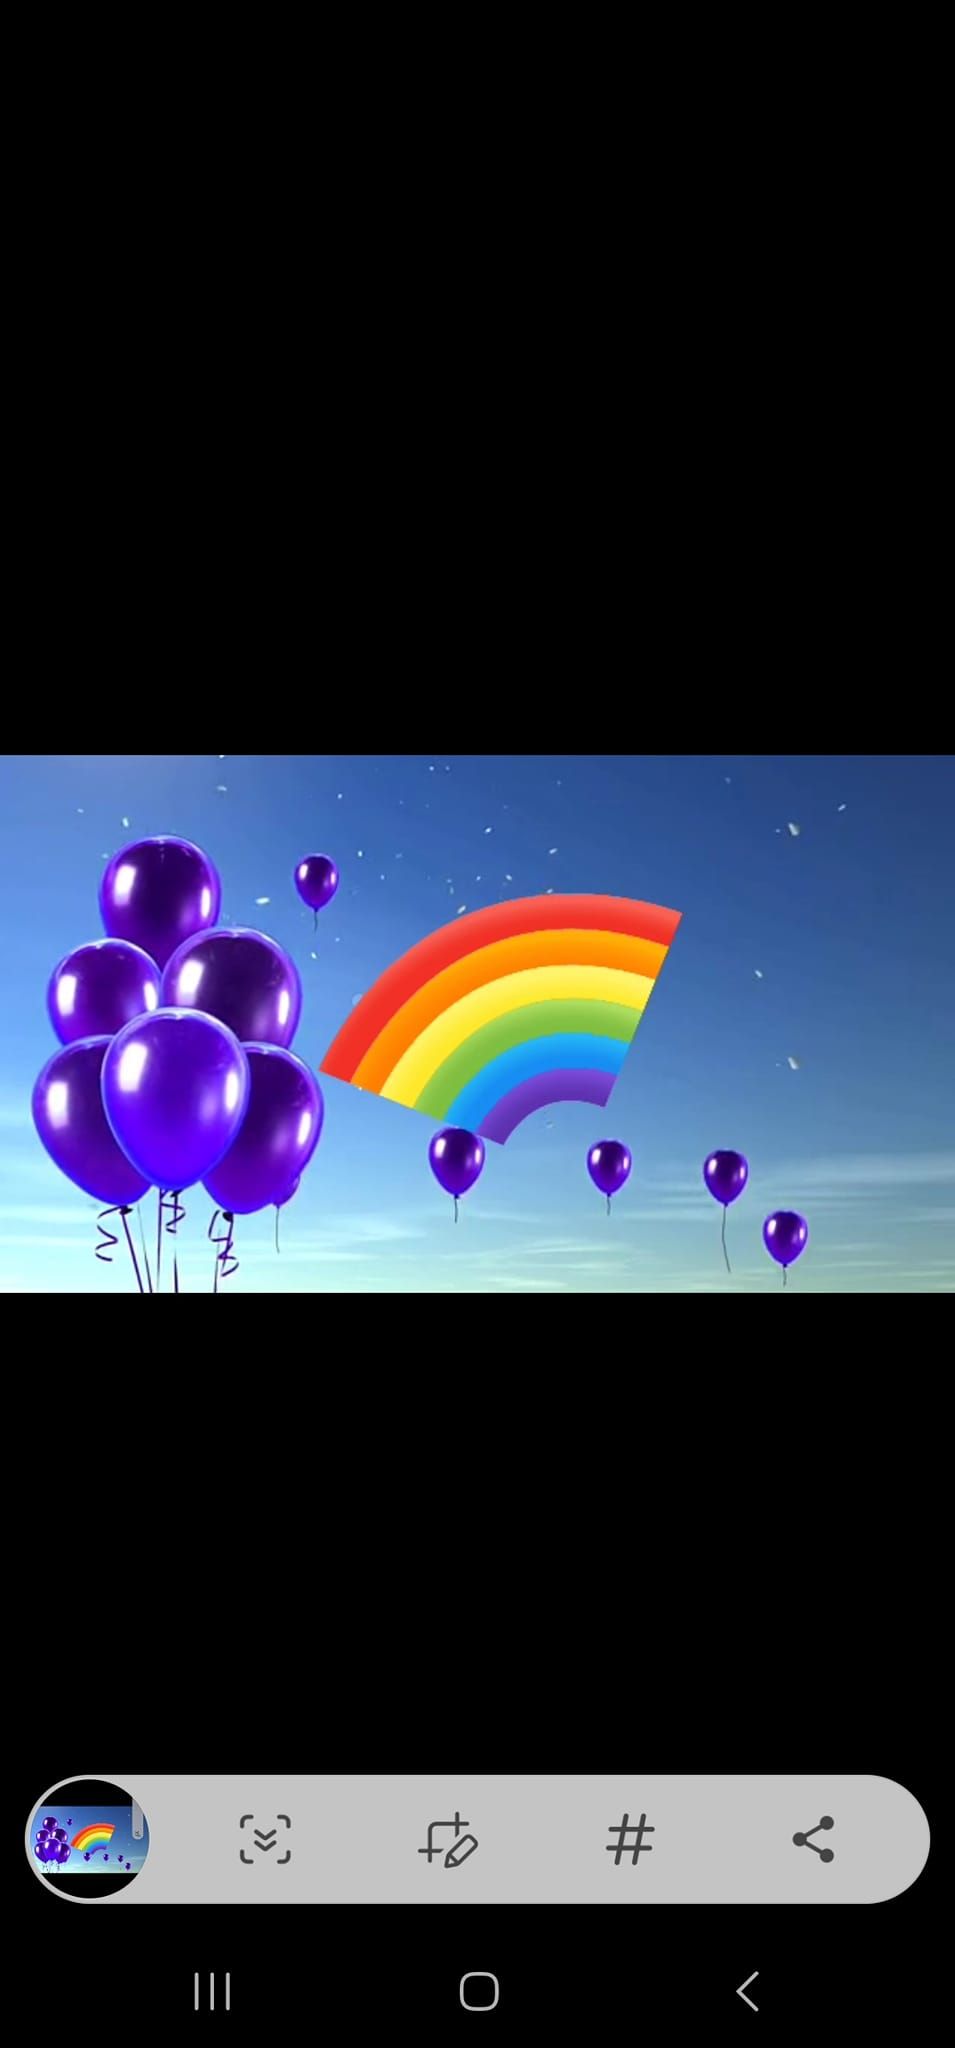 Empower Her\/ Purple balloon release 